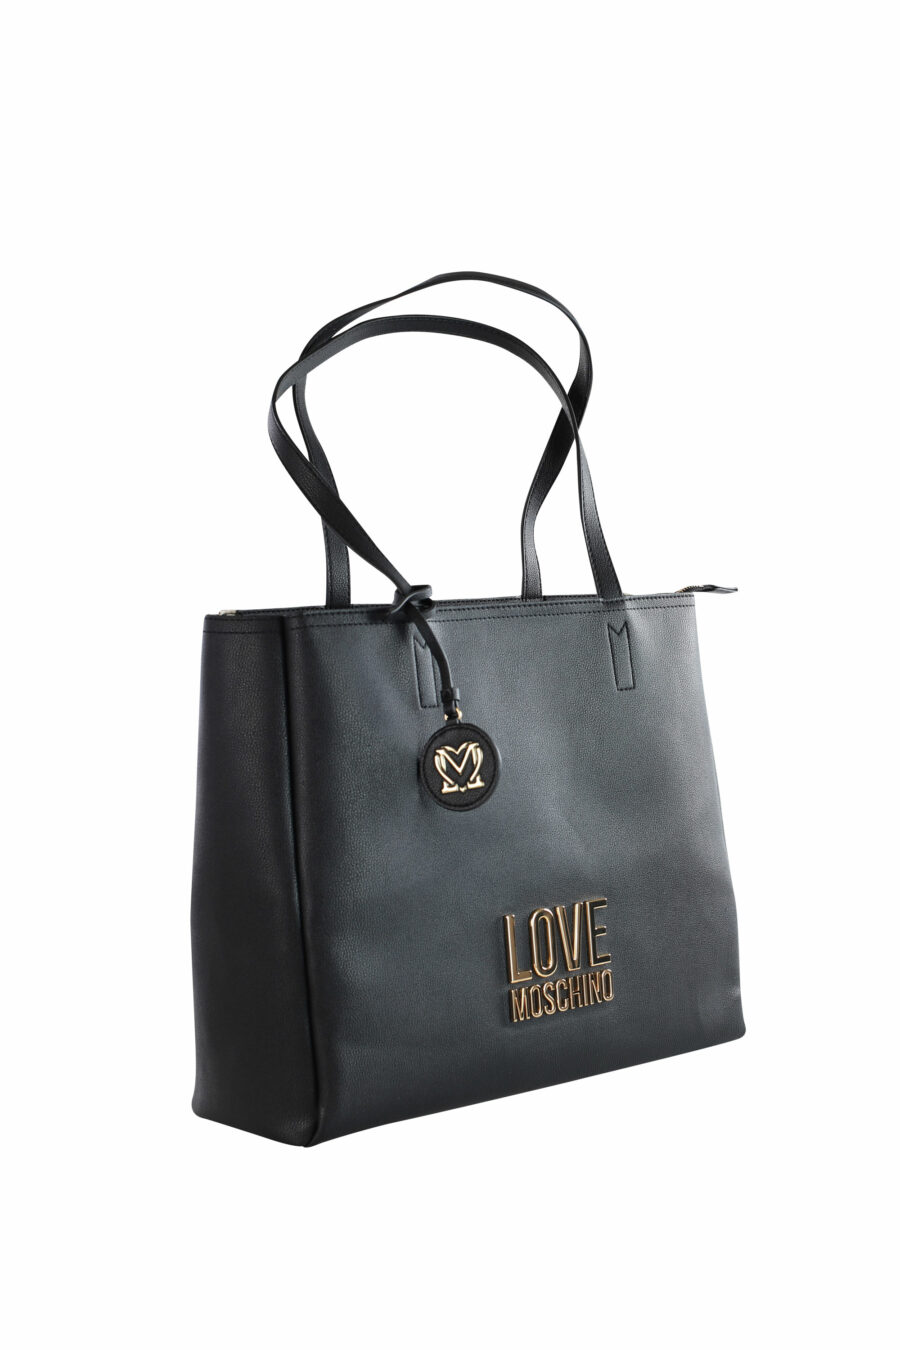 Schwarze Shopper-Tasche mit goldenem Logo-Schriftzug - IMG 3603